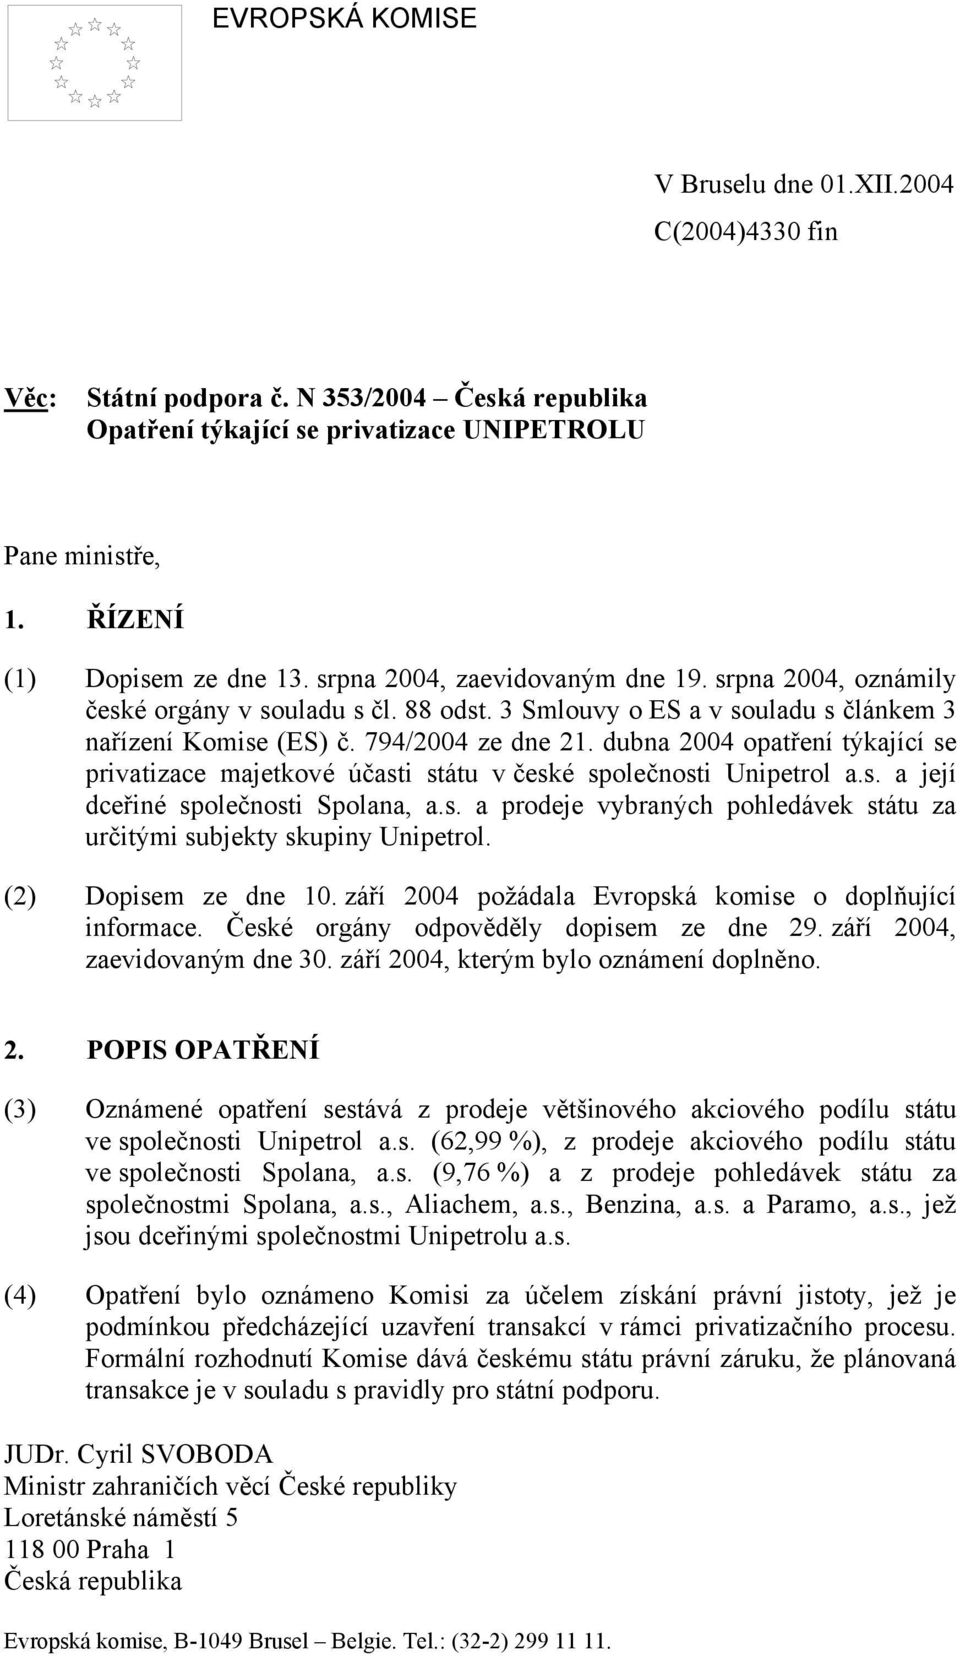 dubna 2004 opatření týkající se privatizace majetkové účasti státu v české společnosti Unipetrol a.s. a její dceřiné společnosti Spolana, a.s. a prodeje vybraných pohledávek státu za určitými subjekty skupiny Unipetrol.